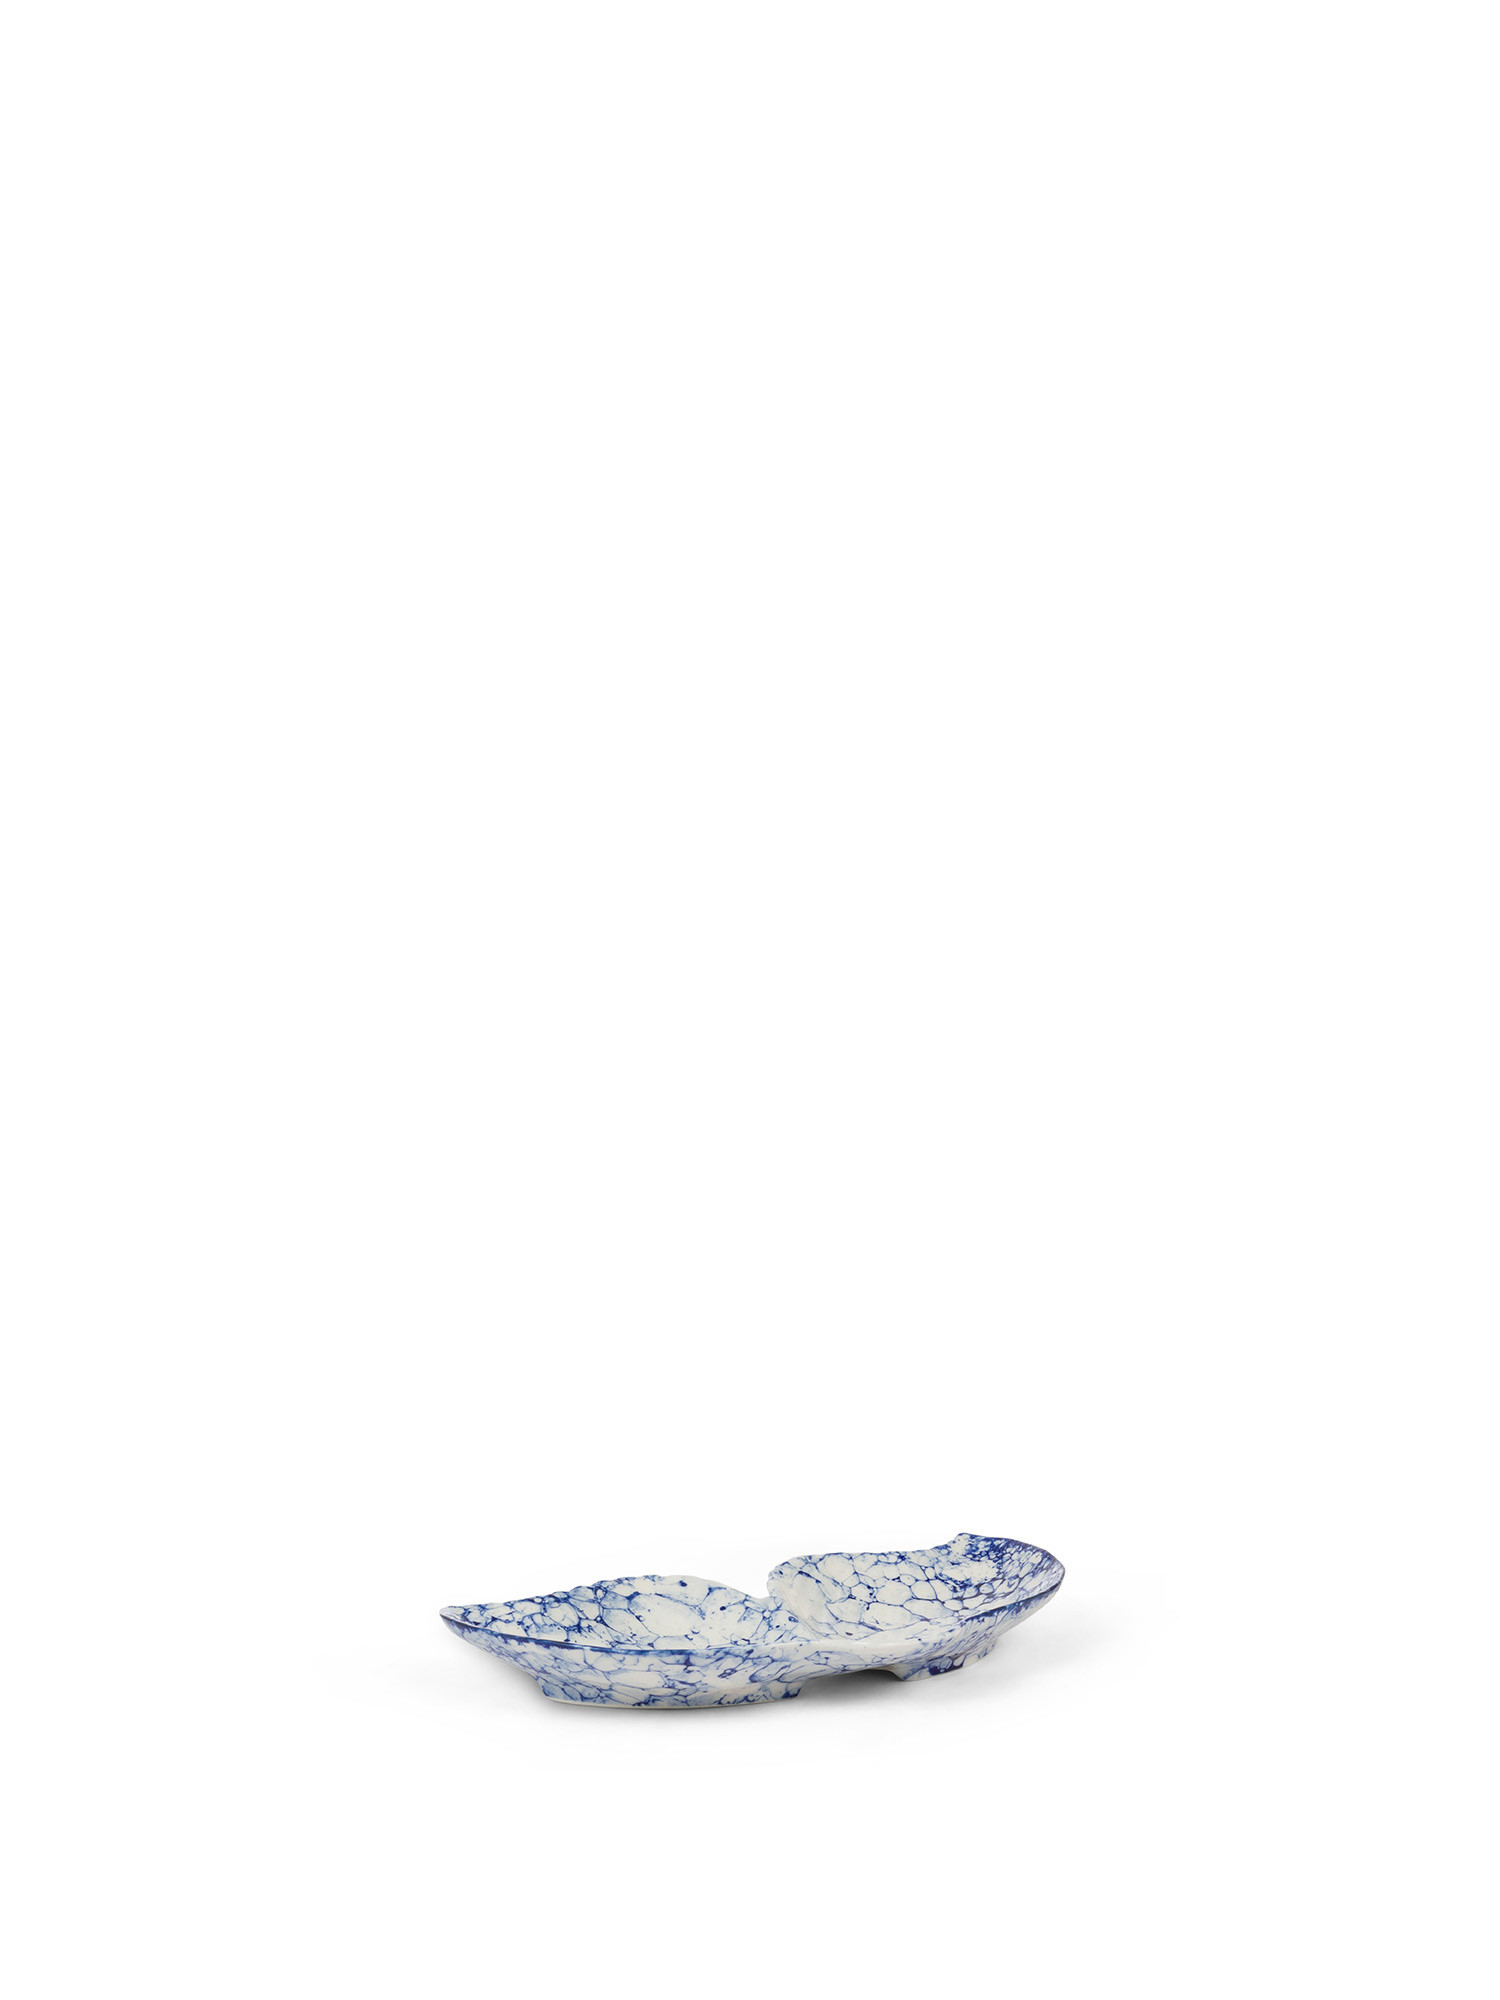 Ceramic pocket emptier, White / Blue, large image number 0